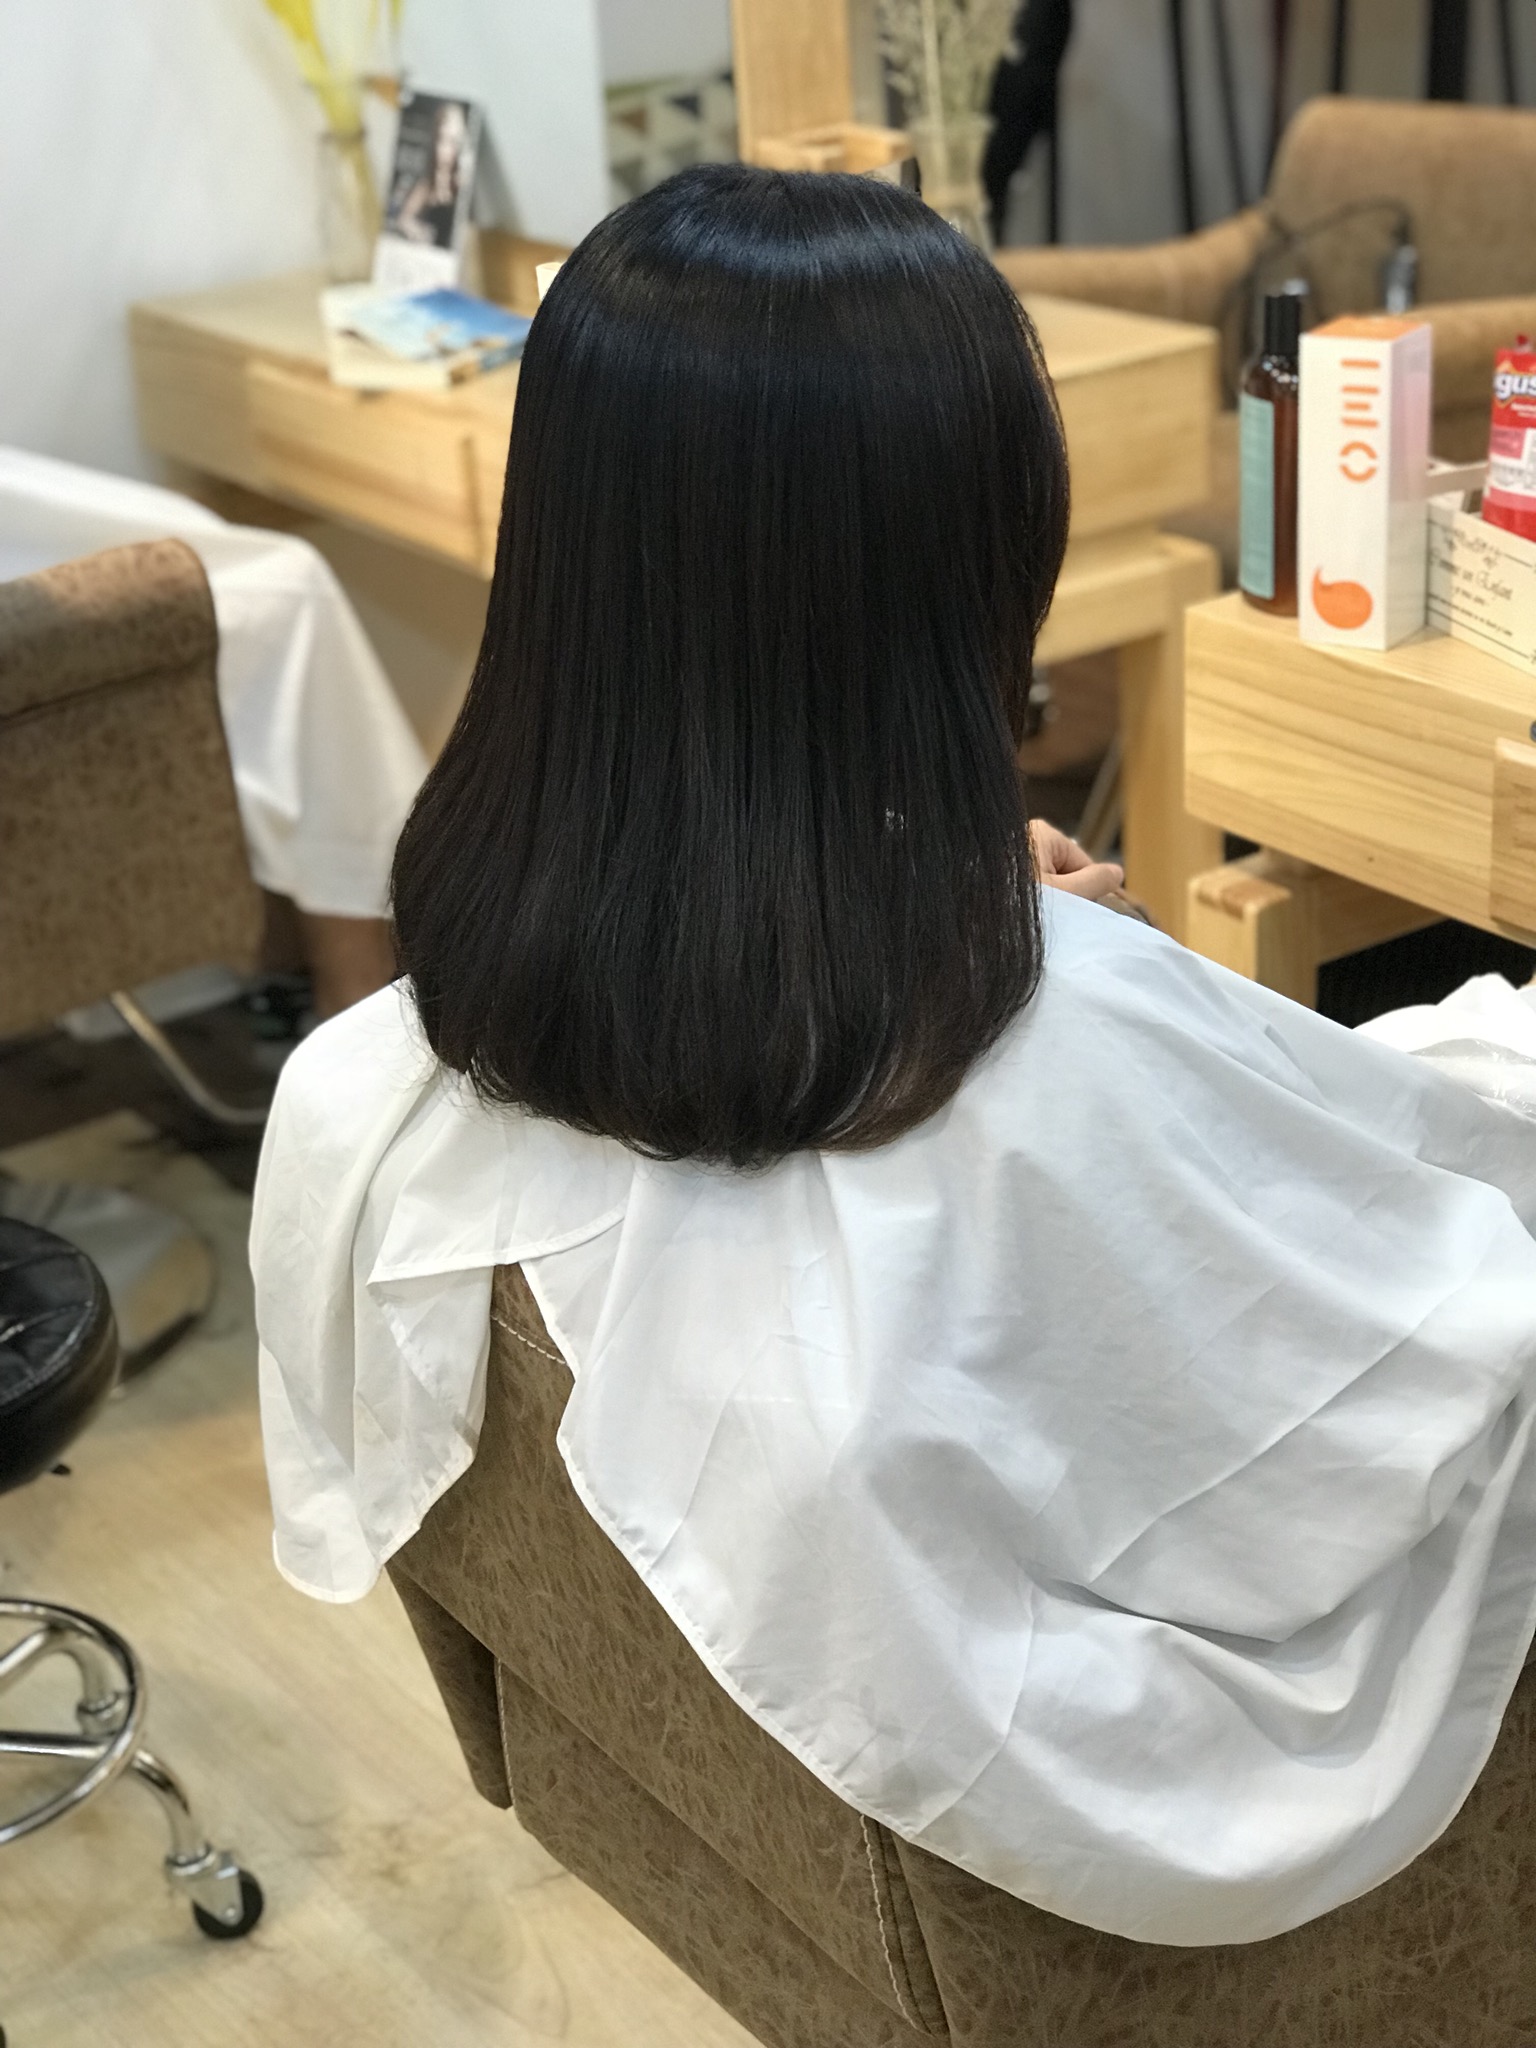 香港美髮網 HK Hair Salon 髮型屋Salon / 髮型師: Hikari Lam